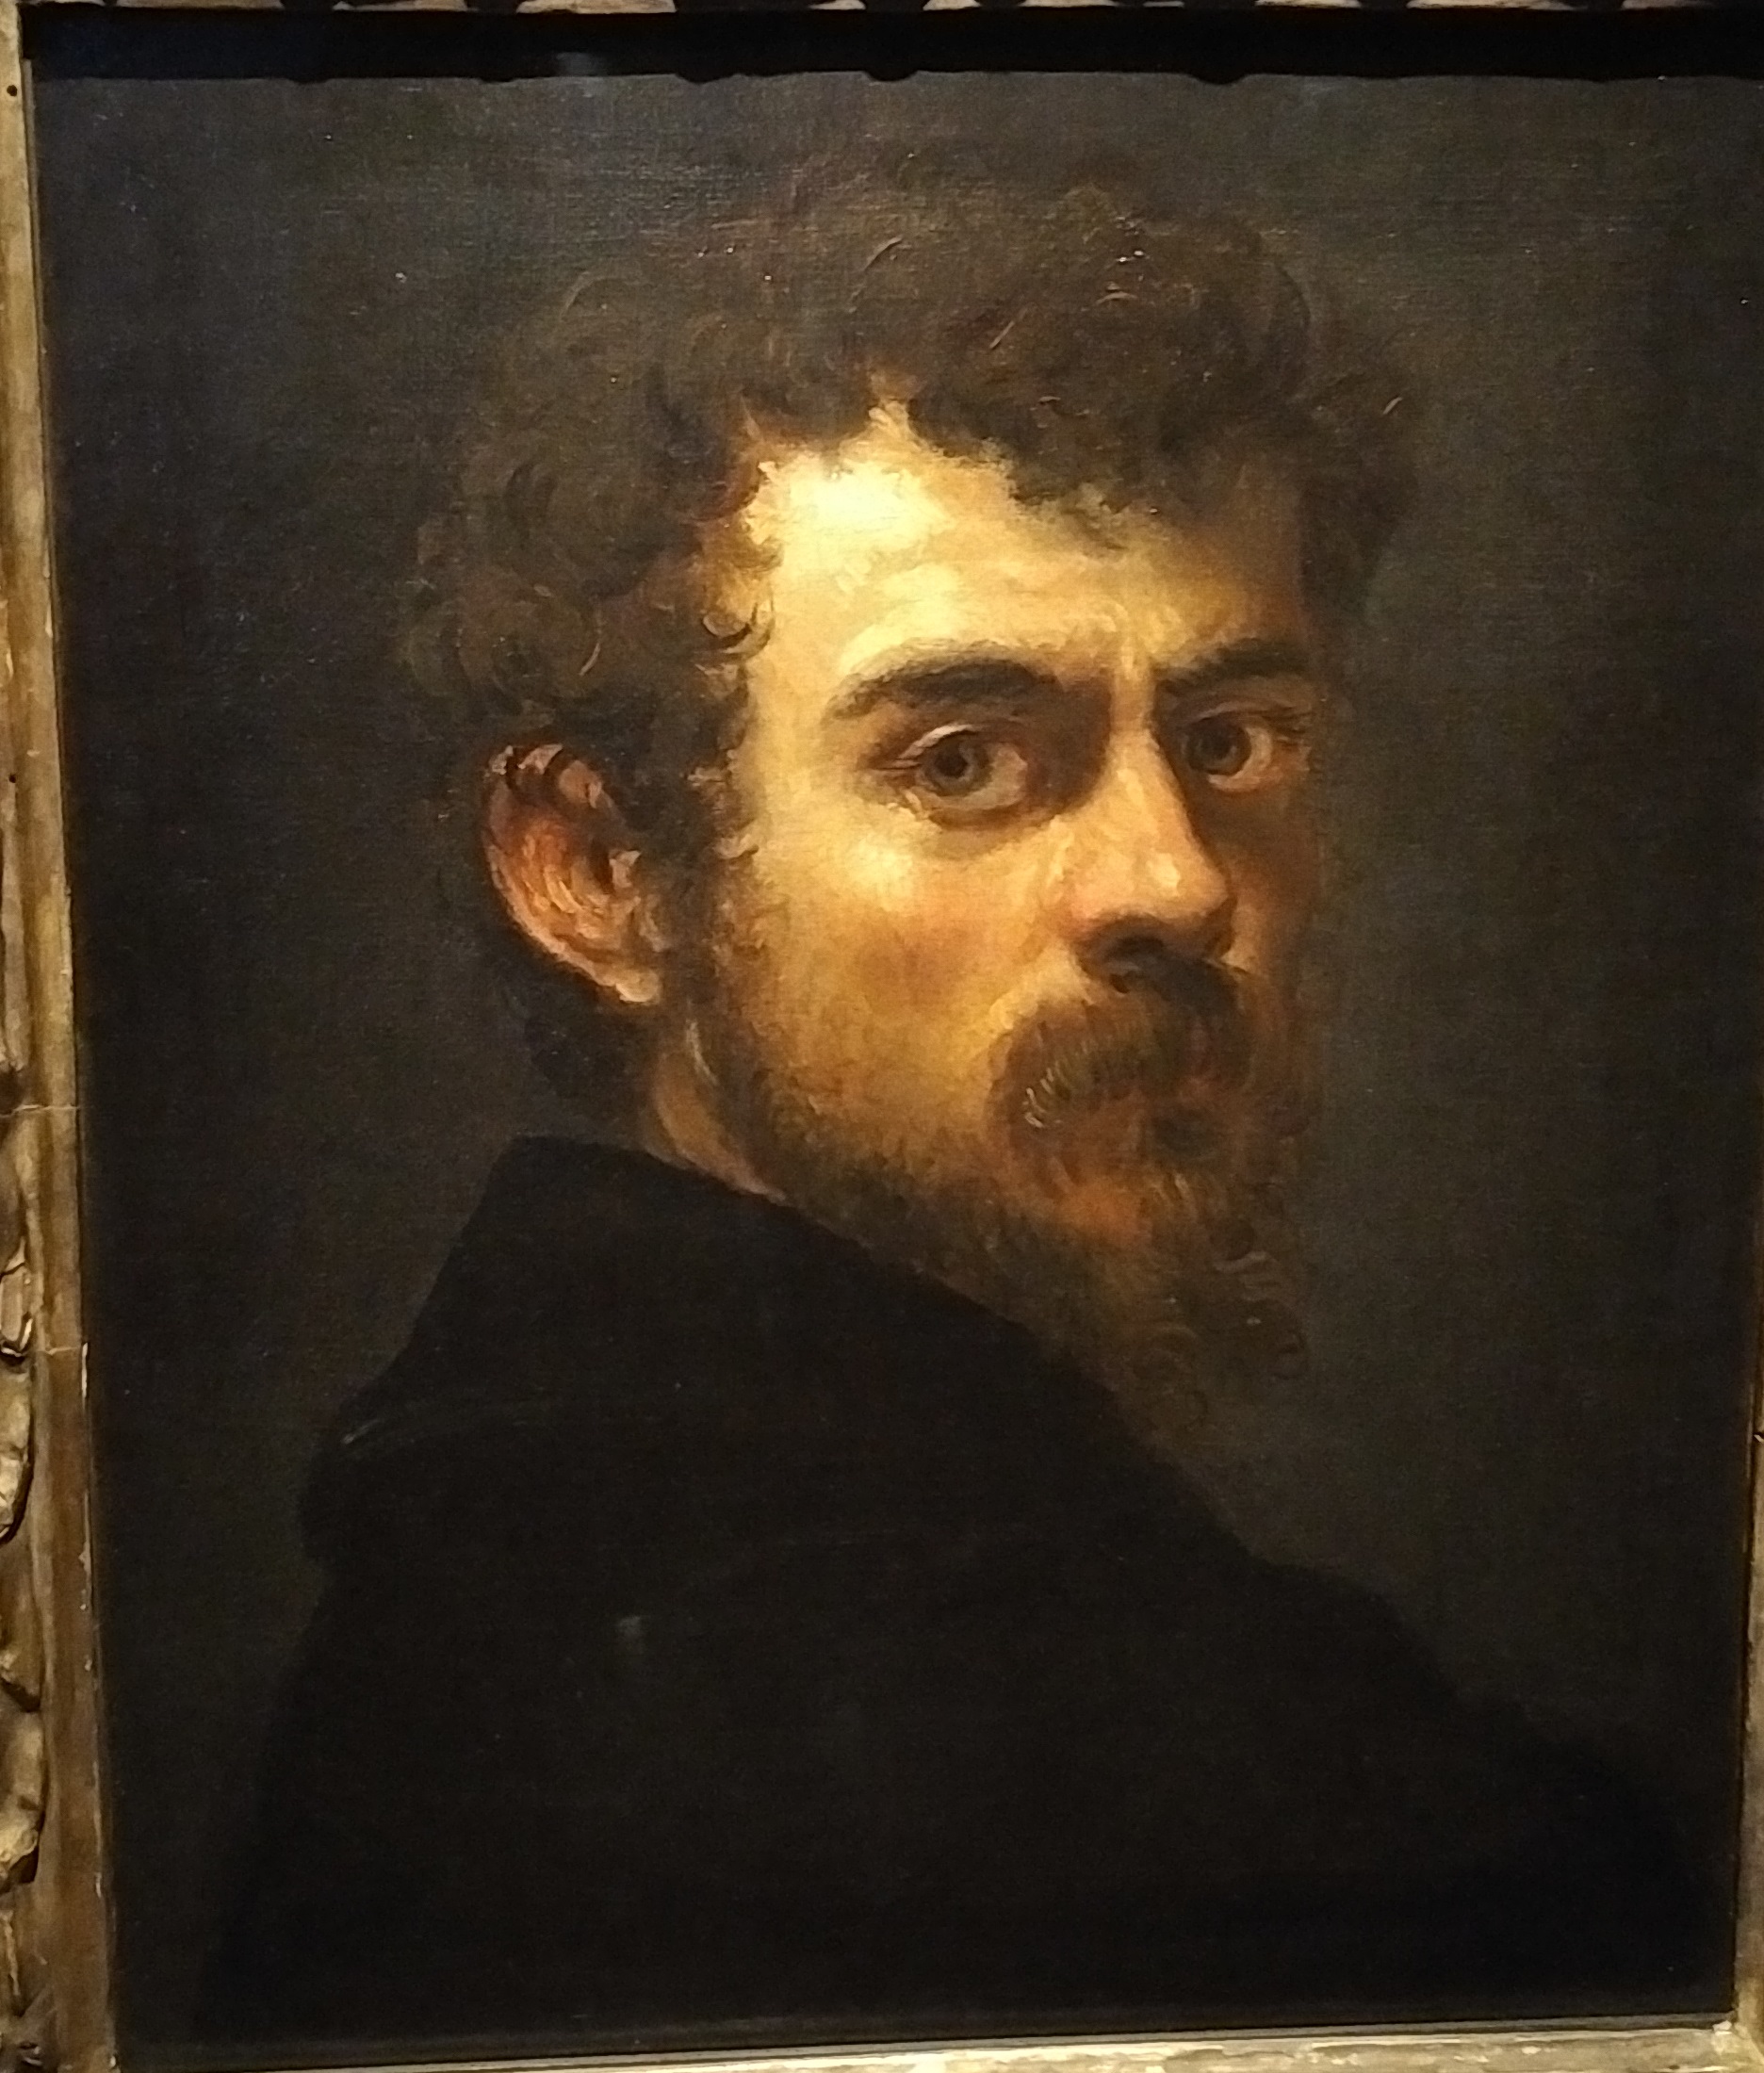 Tintoretto, self-portrait